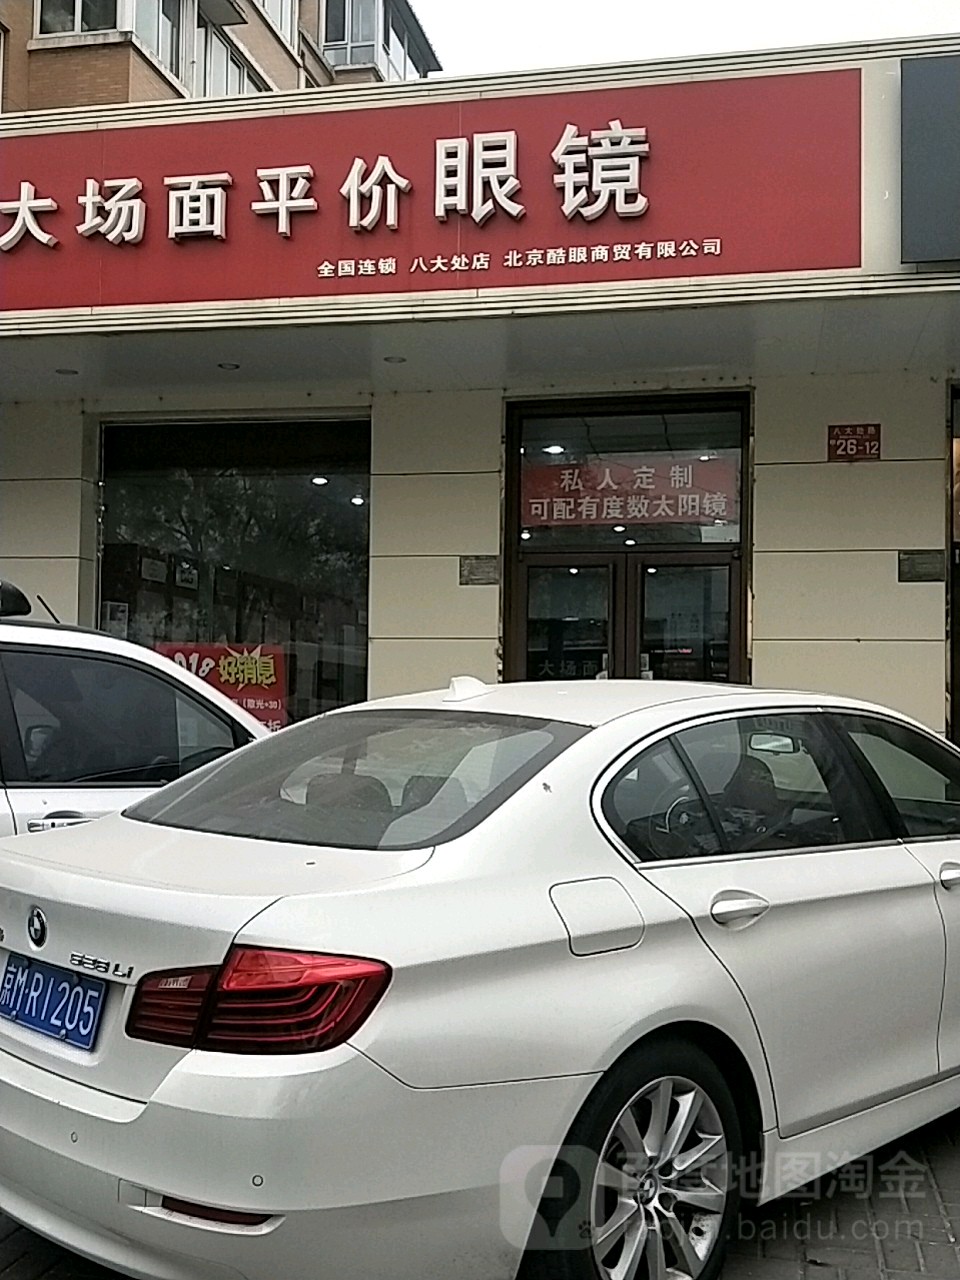 北京酷眼商貿有限公司(八大處店)